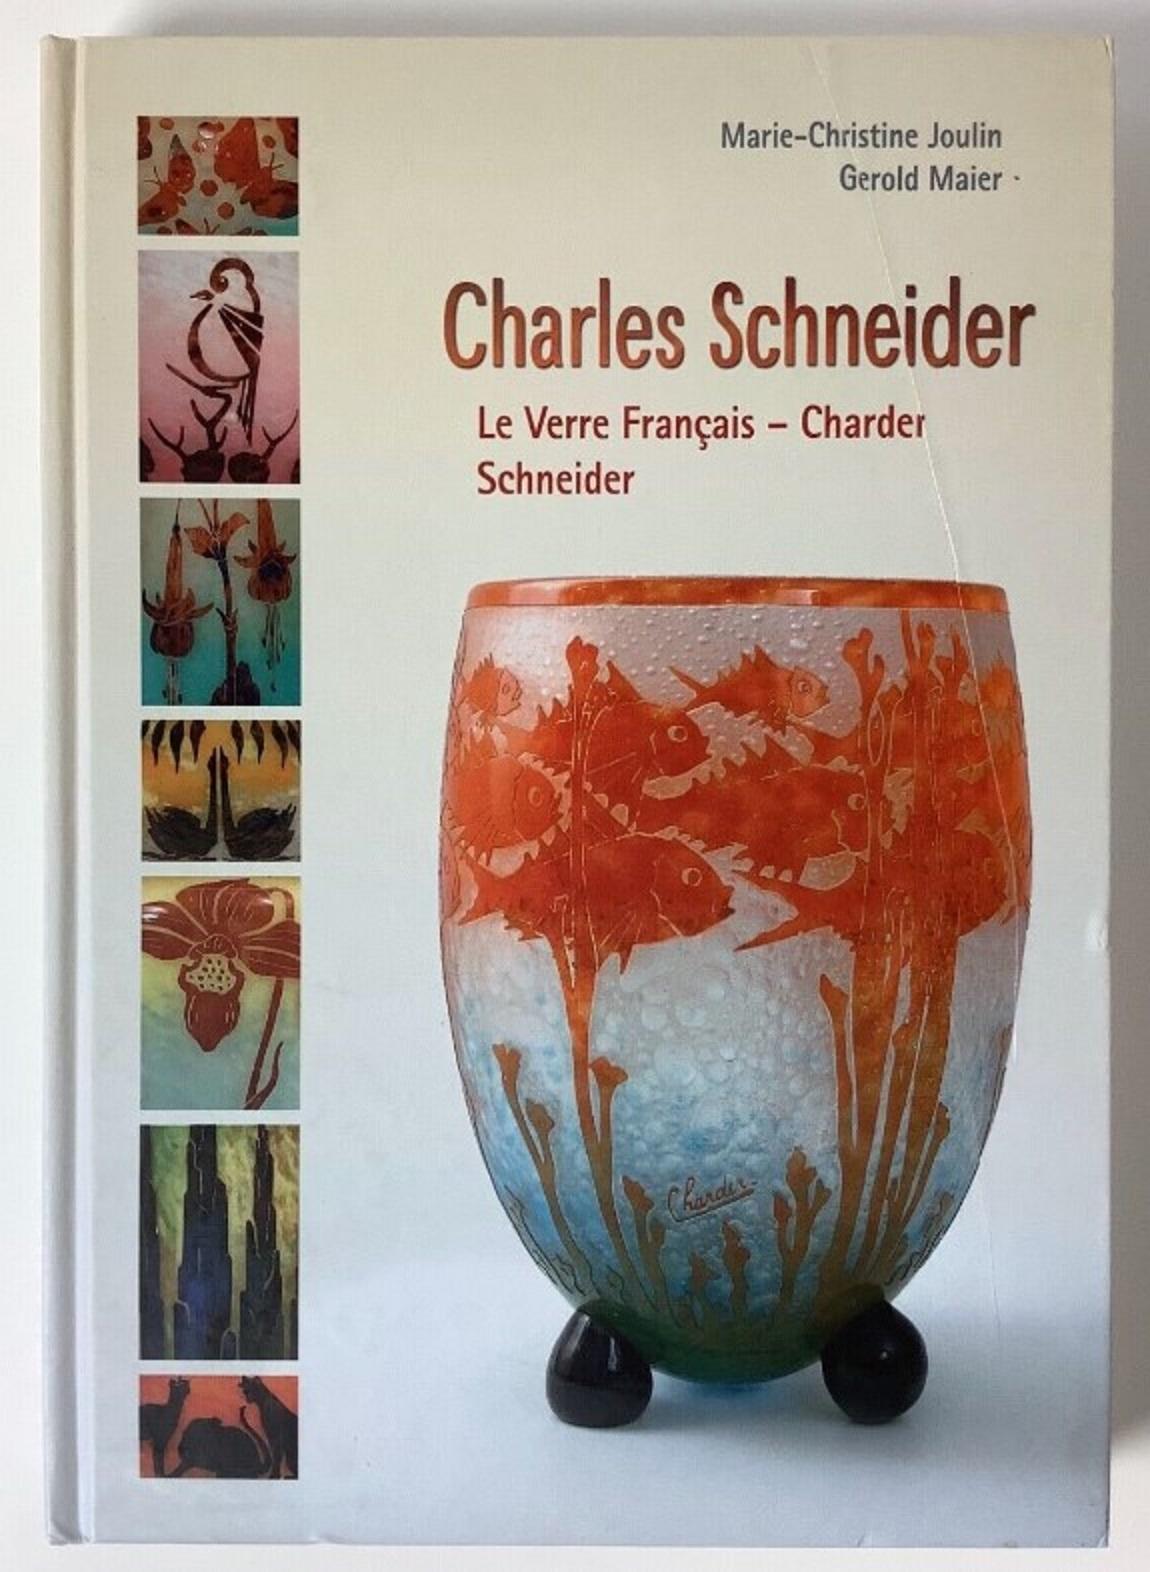 Vase avec pied en fer et applications
Signe : Schneider 
Schneider
Charles Schneider (1881-1953) a étudié l'art dans deux des plus prestigieuses écoles d'art françaises. D'abord à l'Ecole des Beaux-Arts de Nancy, puis à l'Ecole des Beaux-Arts de